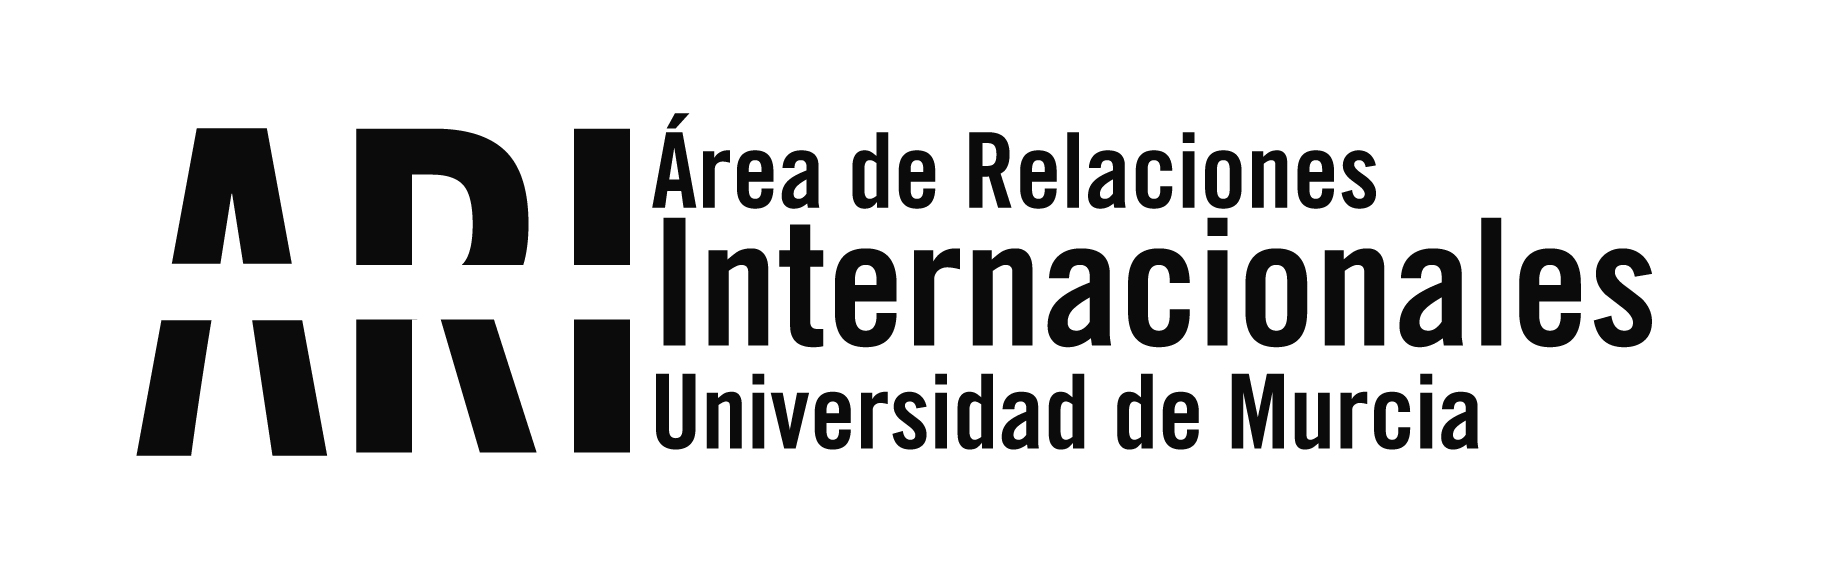 Área de Relaciones Internacionales de la Universidad de Murcia